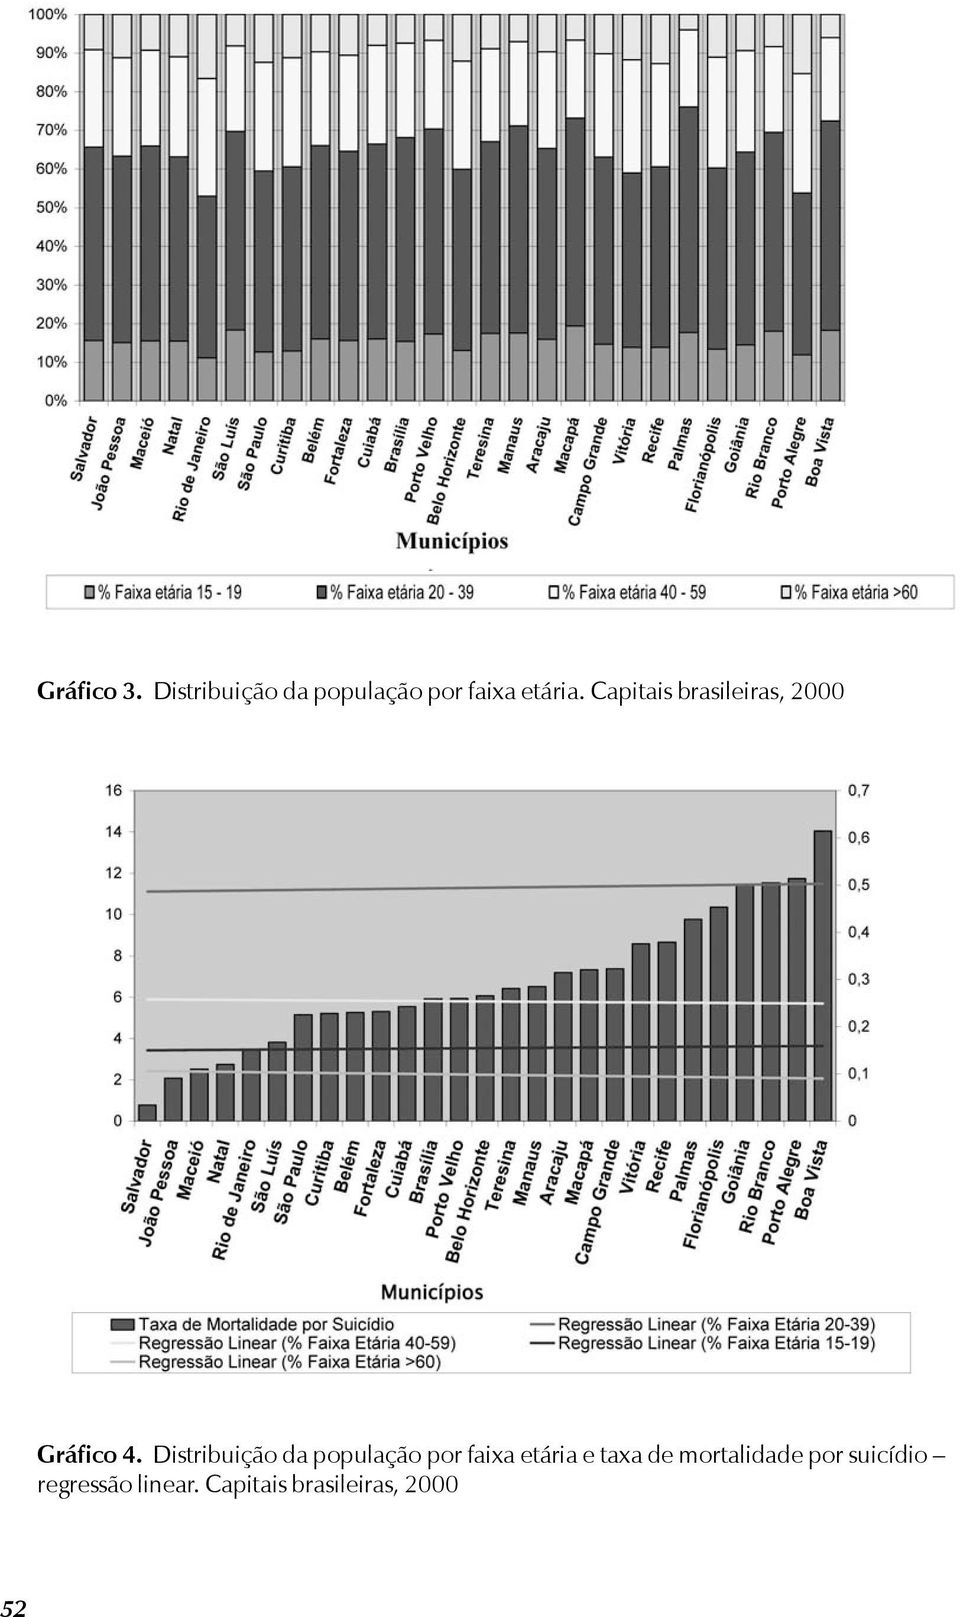 Distribuição da população por faixa etária e taxa de